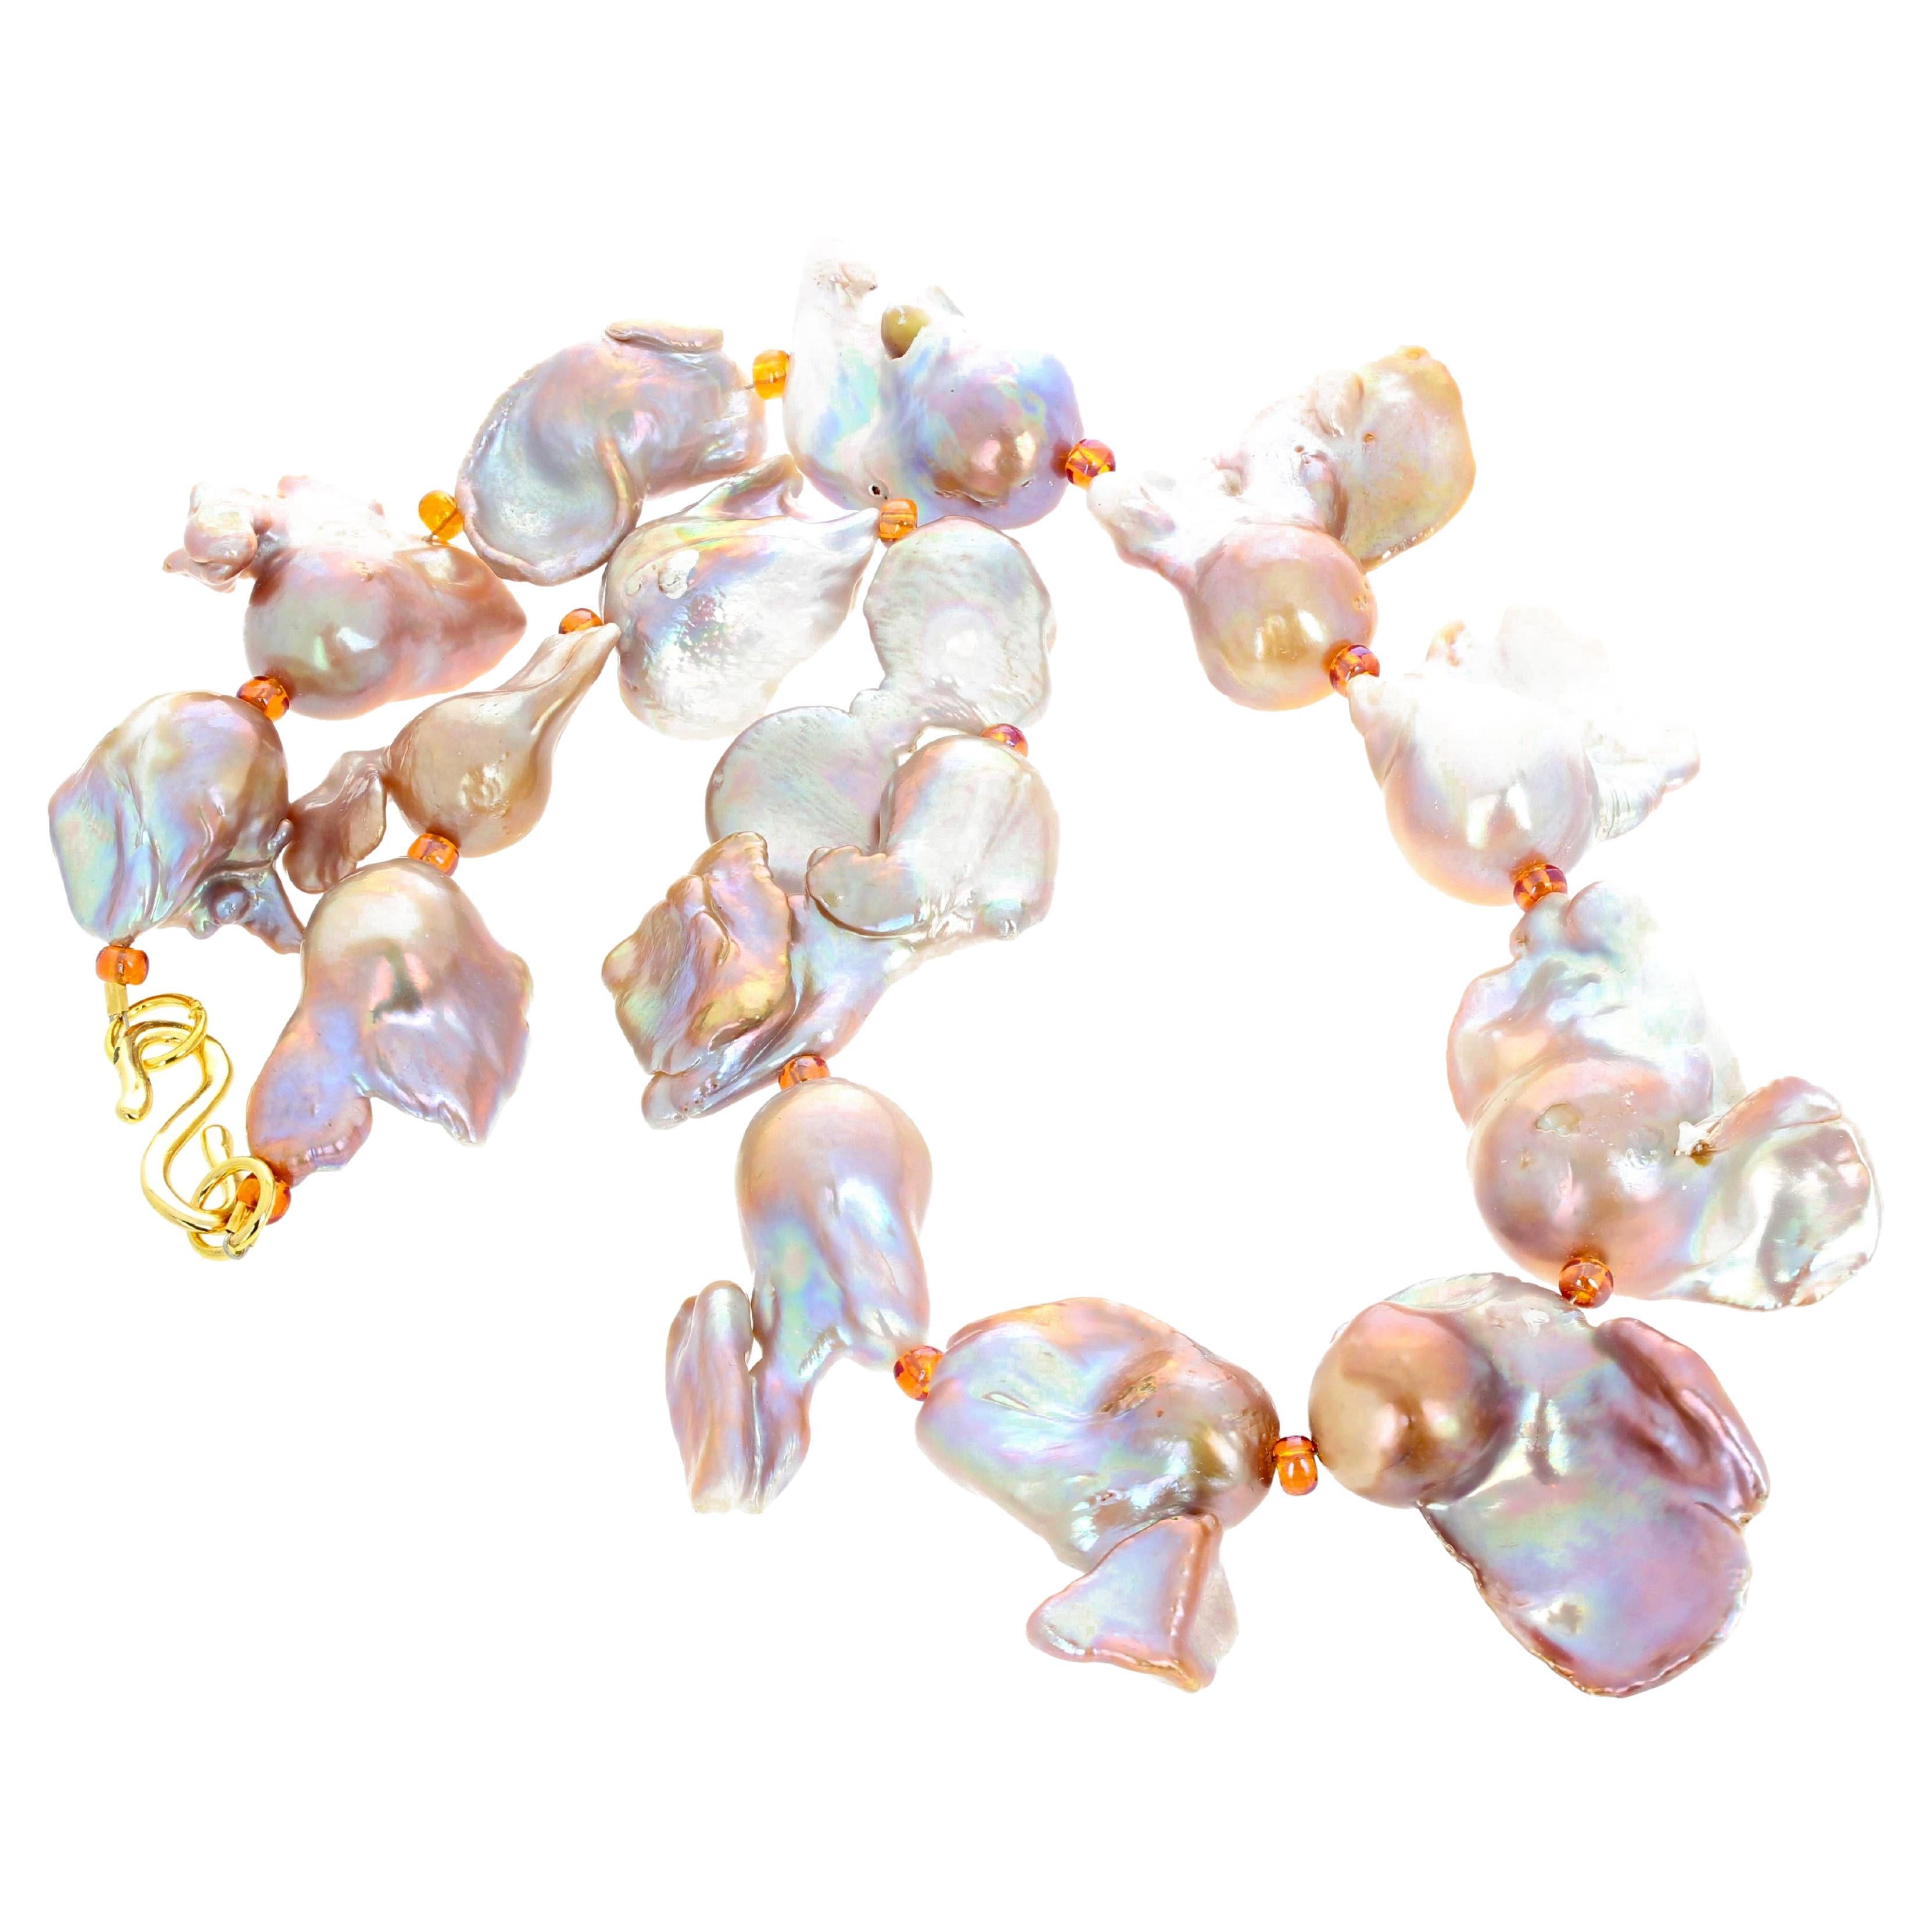 Wunderschöne glühende einzigartige handgefertigte 20 Zoll lange glamouröse elegante Halskette aus natürlichen Barockperlen (15 mm - 18 mm), die mit einem vergoldeten 